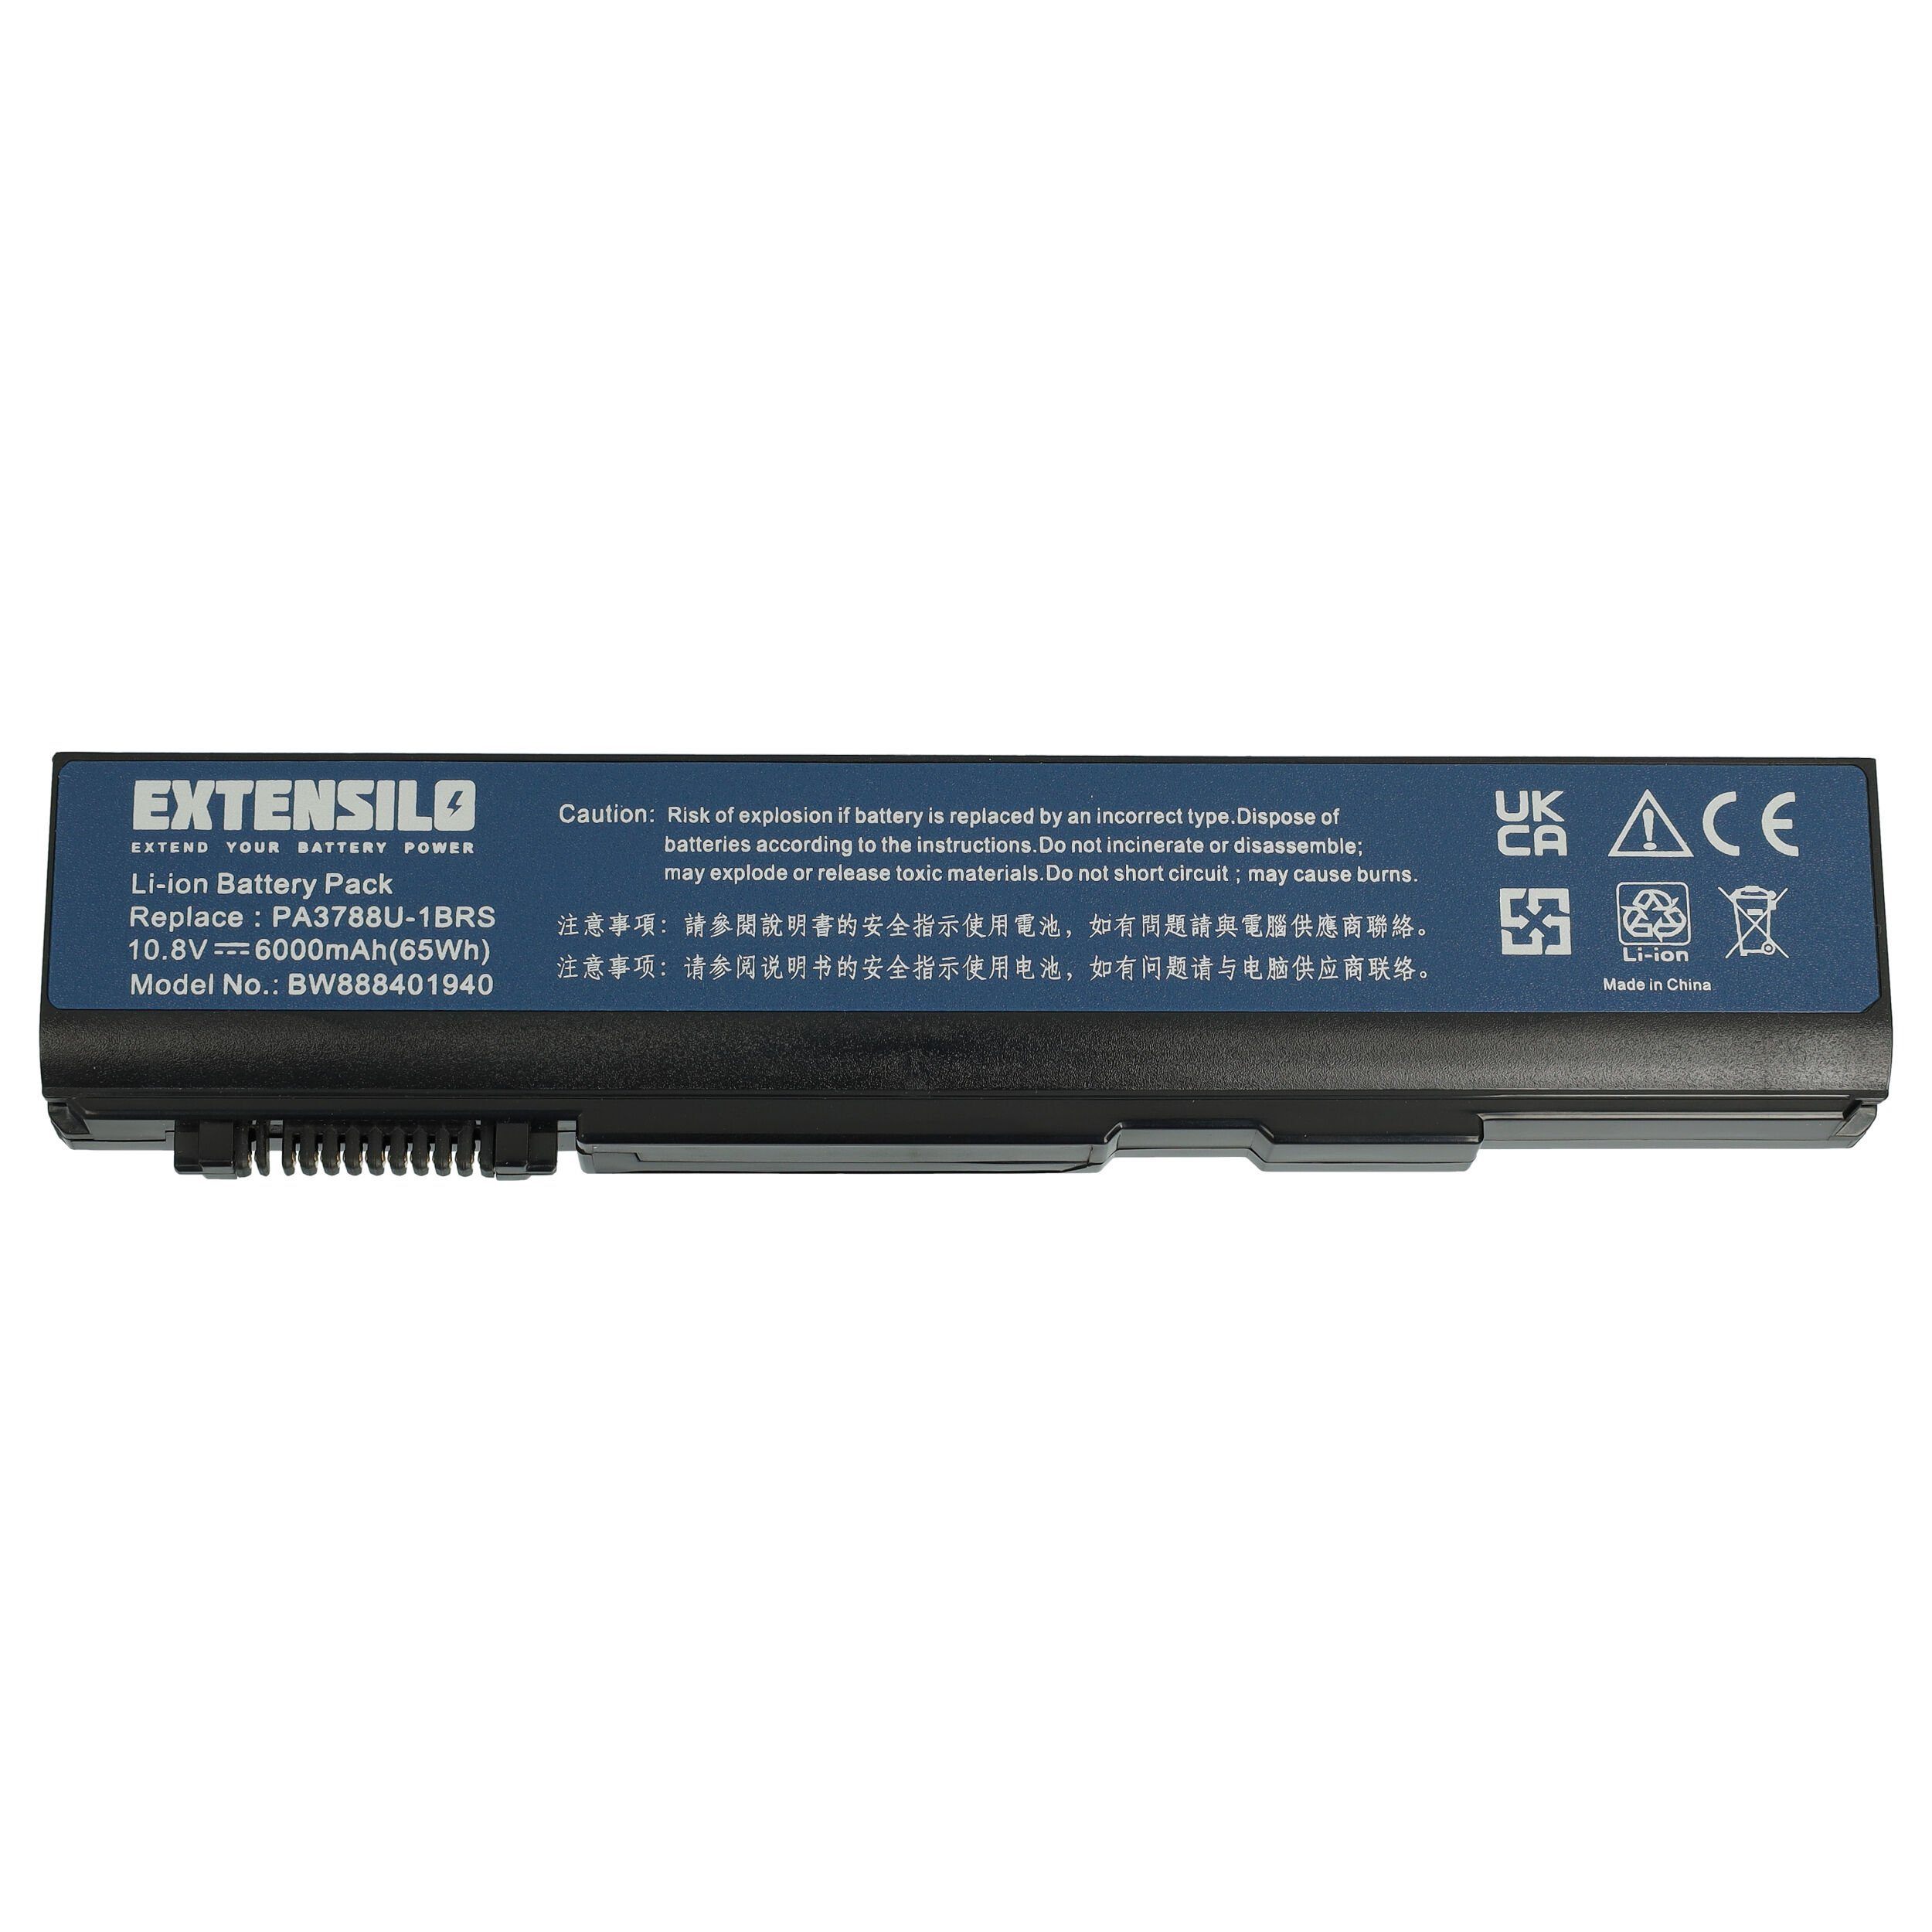 Extensilo passend für Toshiba Tecra M11-120, M11-121, M11-12P, M11-130, M11-132, Laptop-Akku 6000 mAh